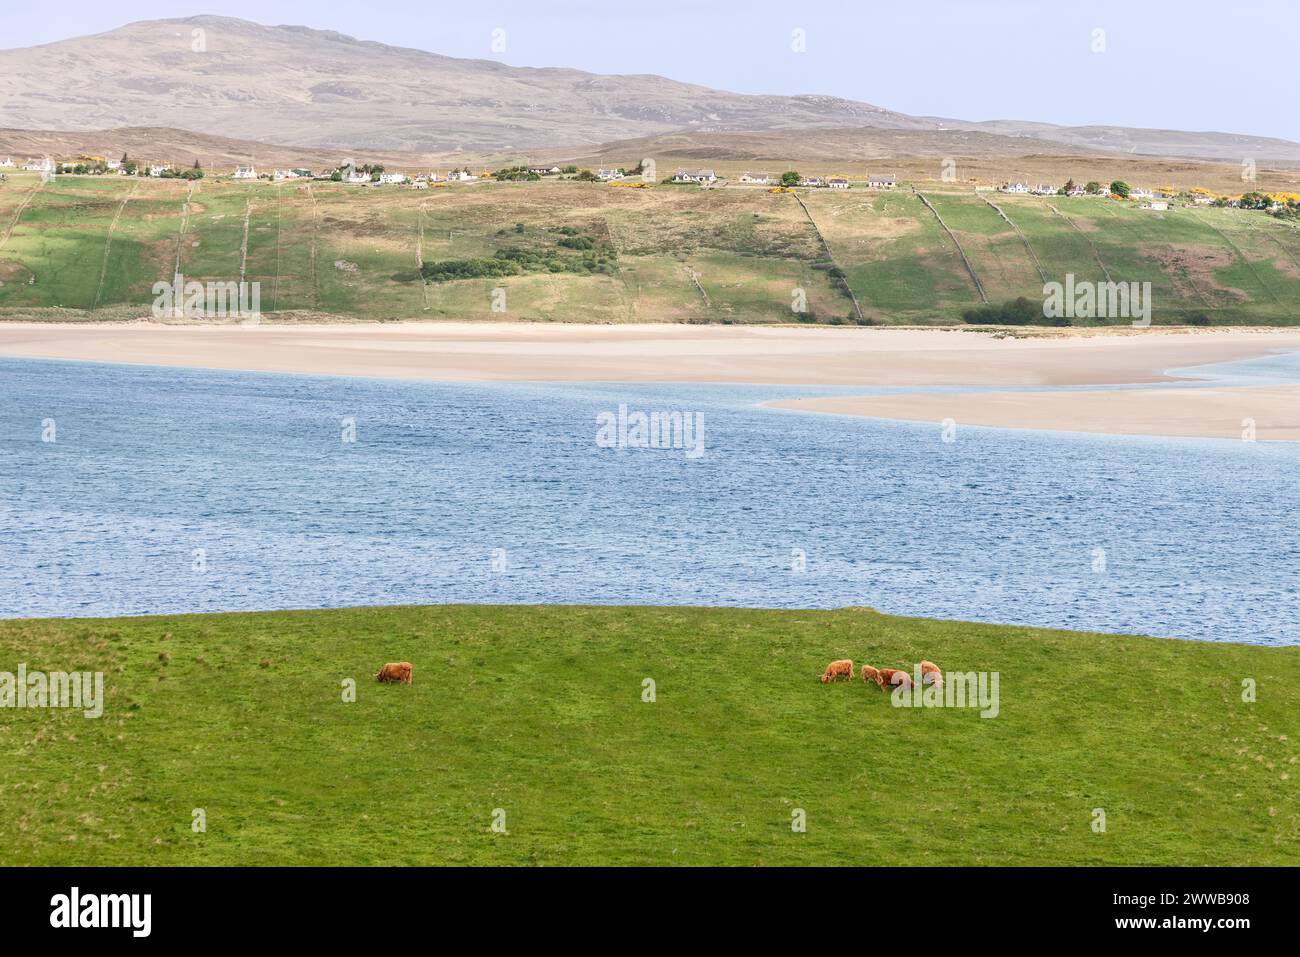 A Rhitongue, in Scozia, le vacche delle Highland pascolano pacificamente su un prato lussureggiante, con un tranquillo sfondo di una spiaggia sabbiosa e acque azzurre Foto Stock